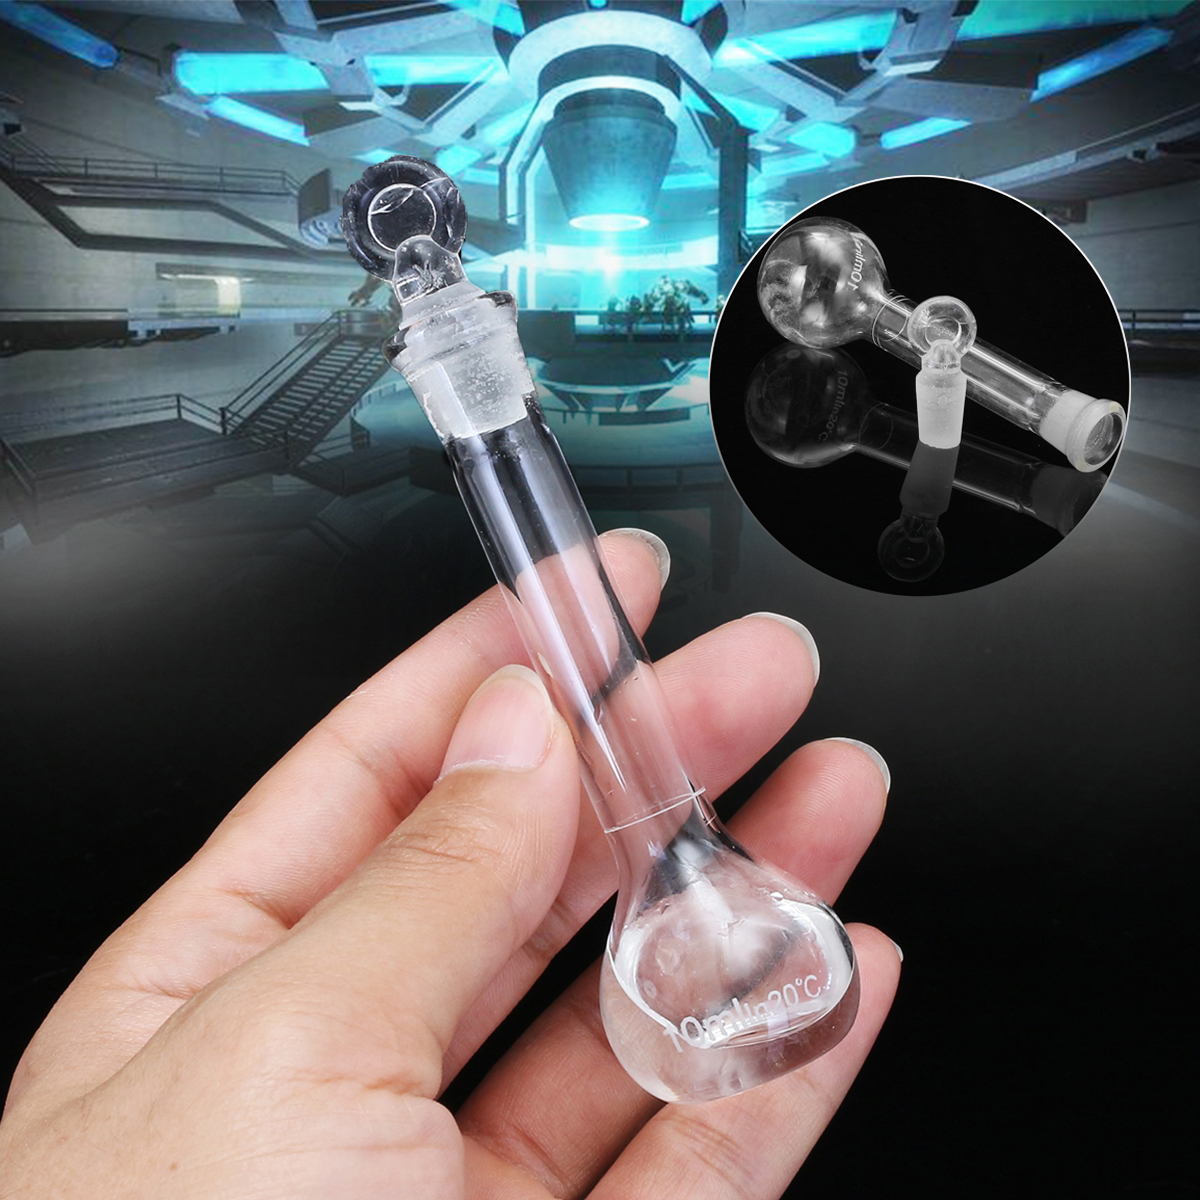 10mL-Clear-Glass-Volumetric-Flask-w-Glass-Stopper-Lab-Chemistry-Glassware-1356433-1